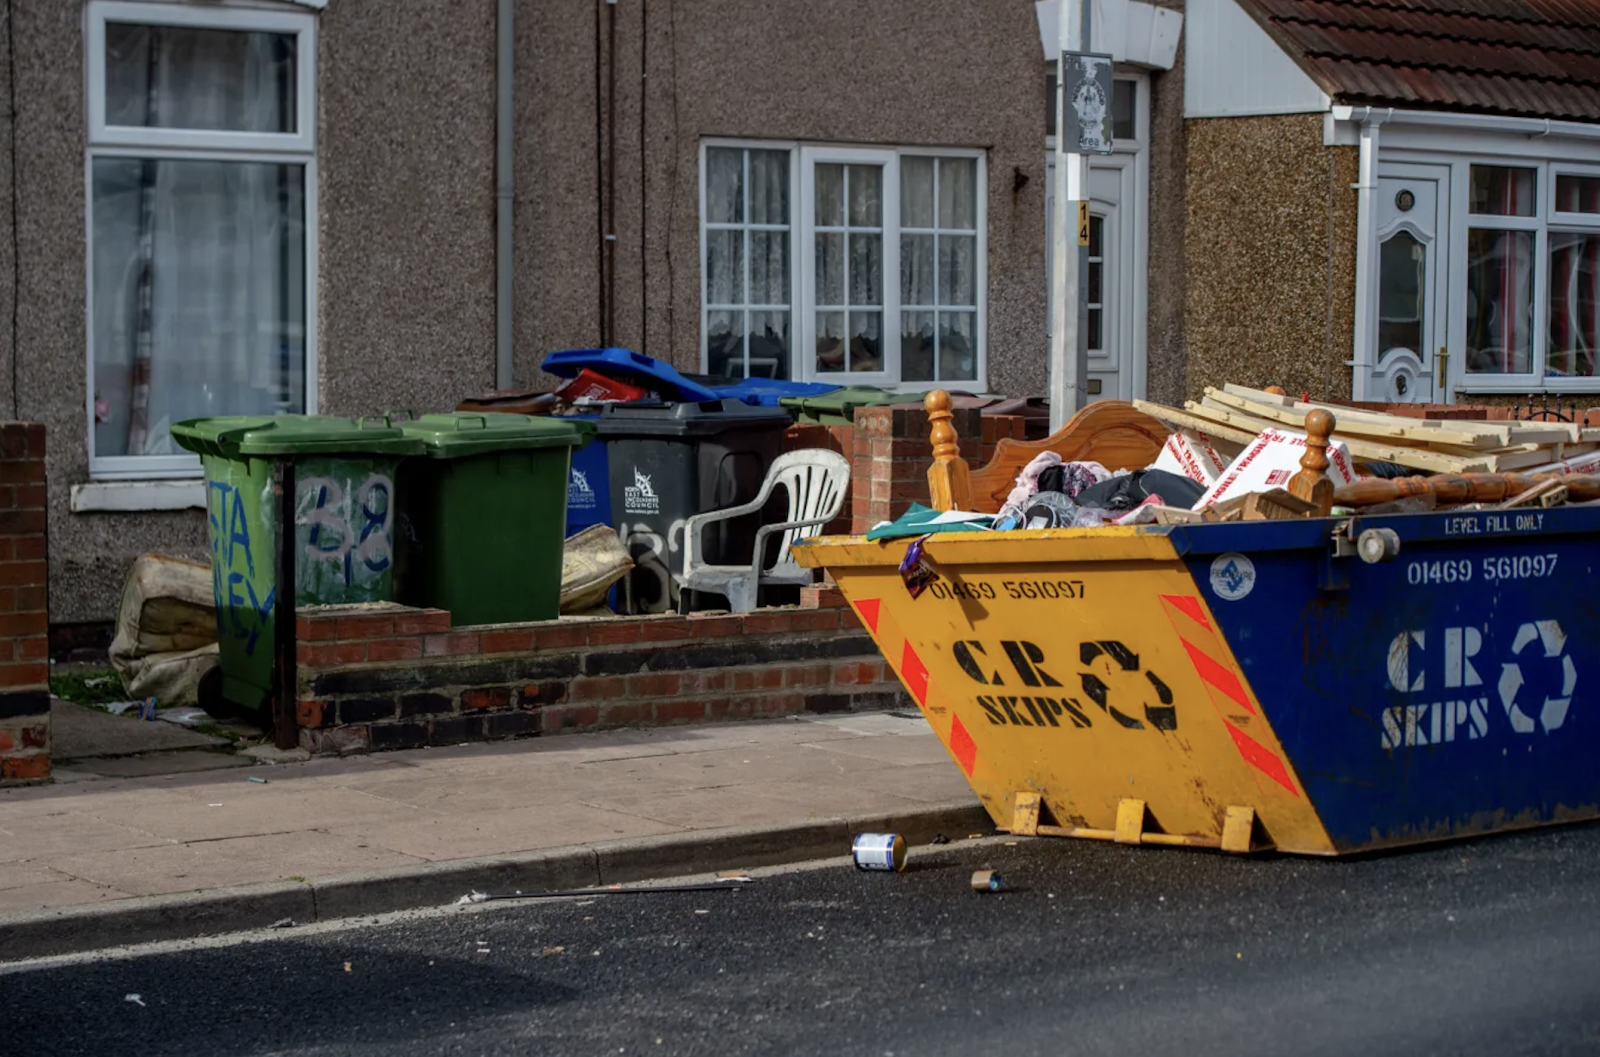 Thị trấn nghèo nhất nước Anh, nơi người dân phải lục thùng rác để kiếm tiền - Ảnh 3.